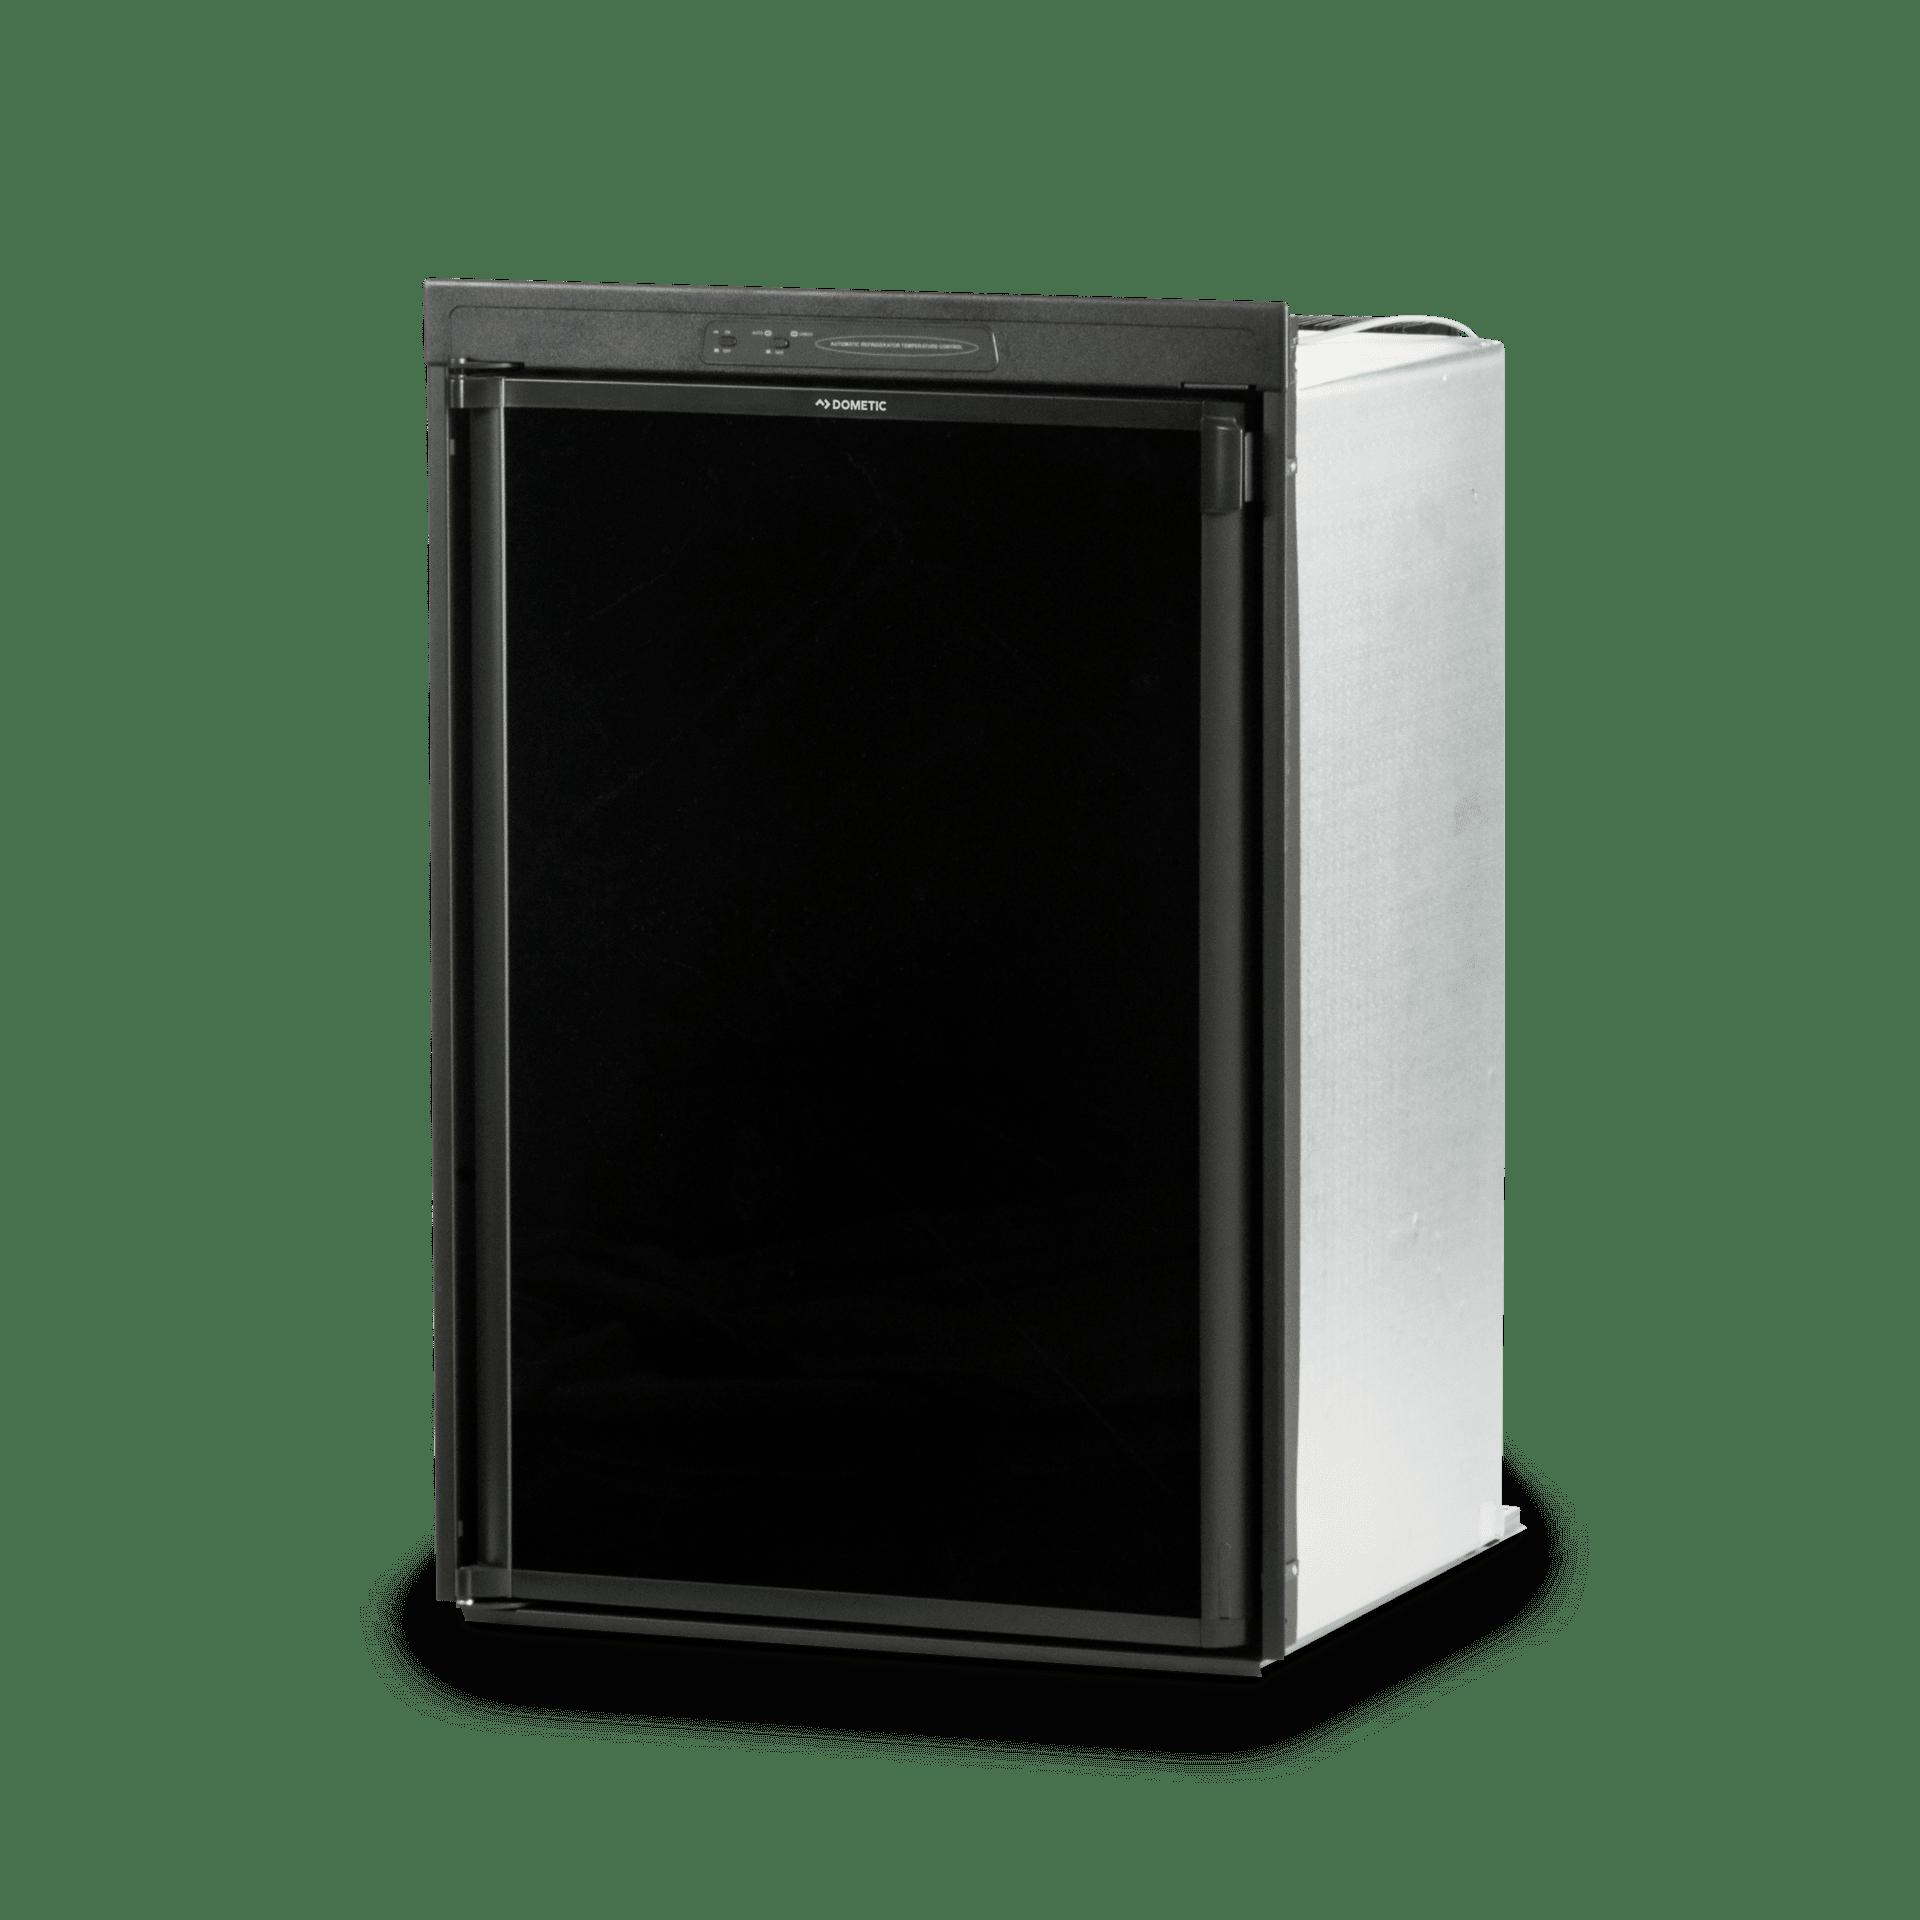 Réfrigérateur congélateur Double énergie 190 litres DOMETIC RGE4000